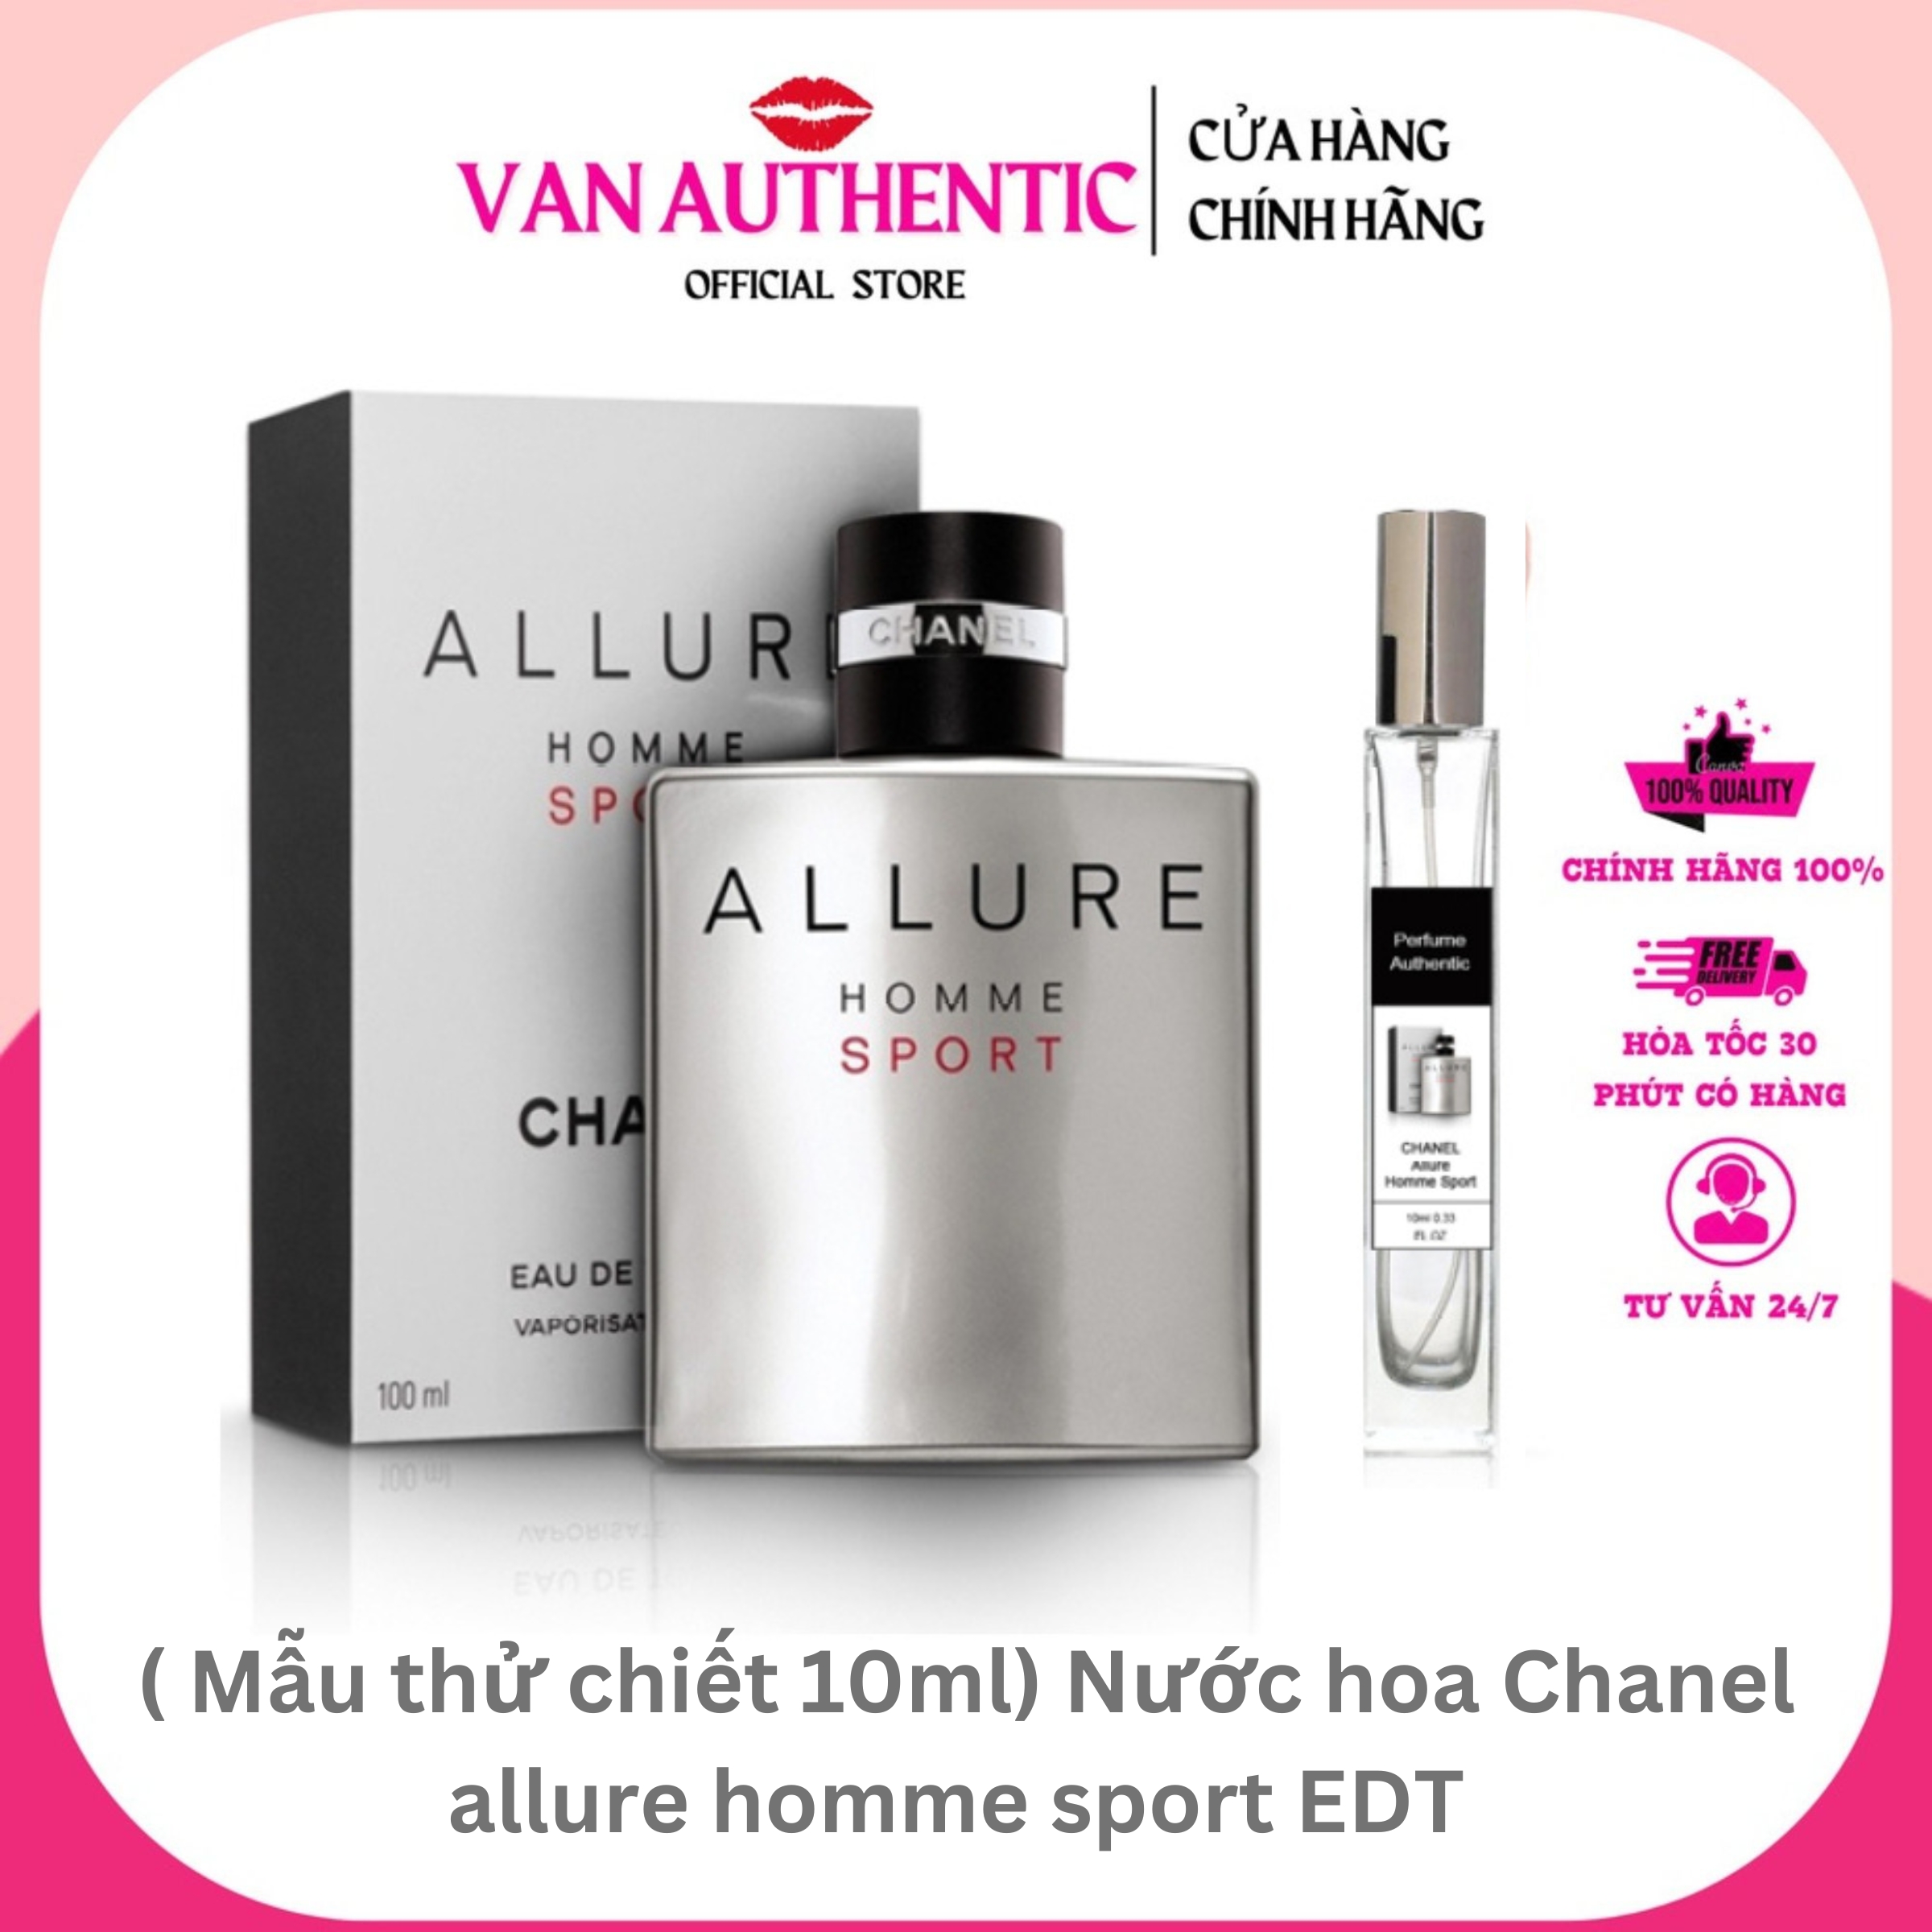 Nước hoa Chanel allure homme sport EDT FULL 100ml - CHIẾT 10ML 